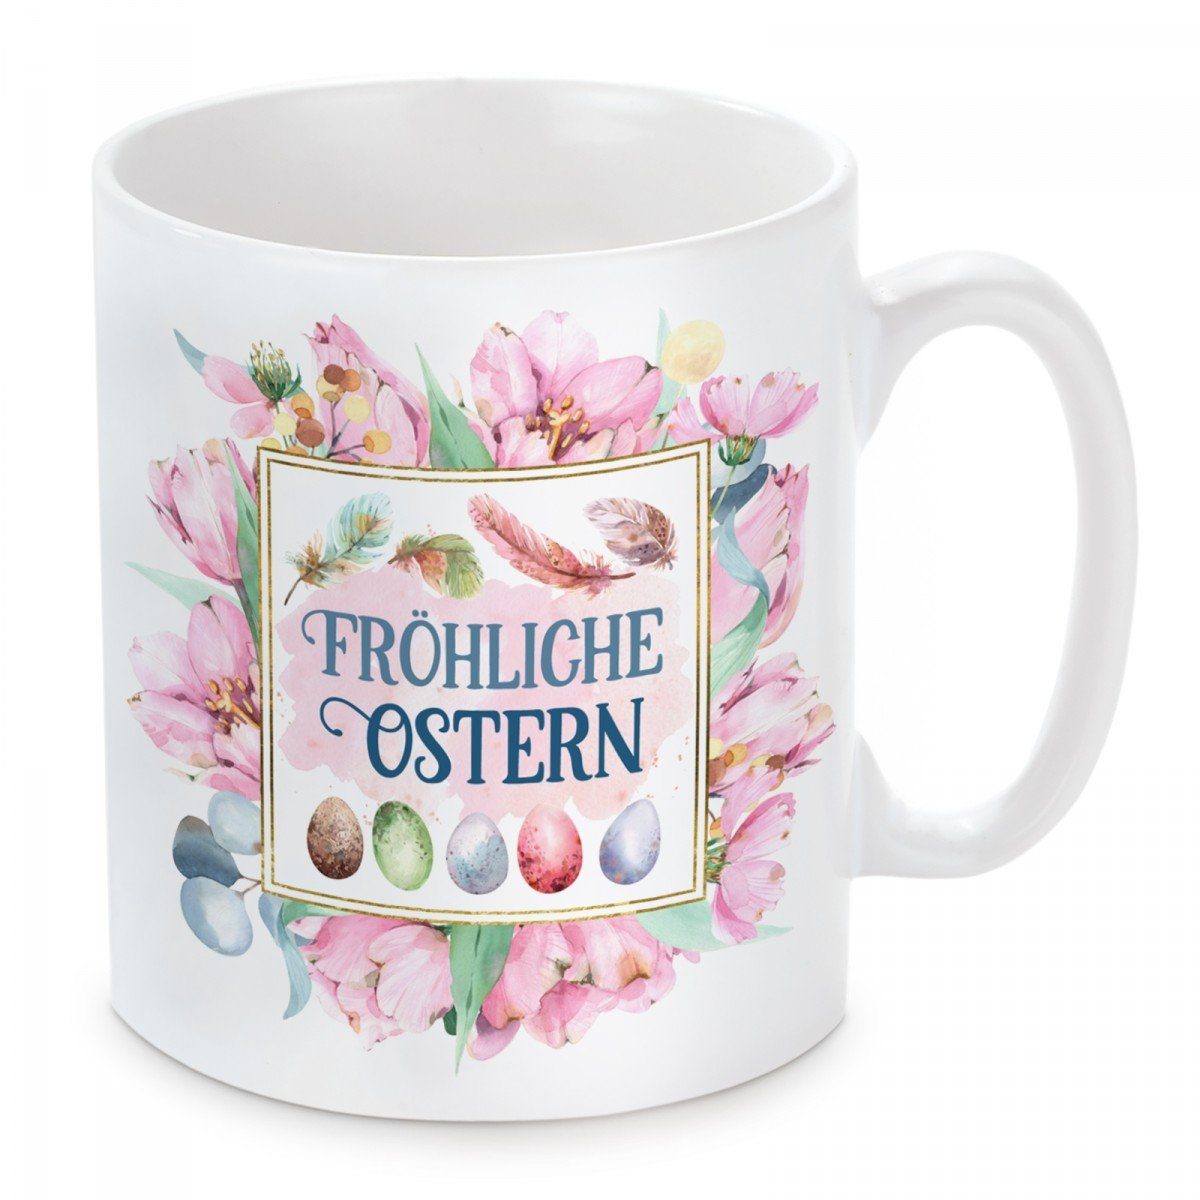 Ostern, mit und Kaffeetasse spülmaschinenfest Herzbotschaft Fröhliche Kaffeebecher mikrowellengeeignet Tasse Motiv Keramik,